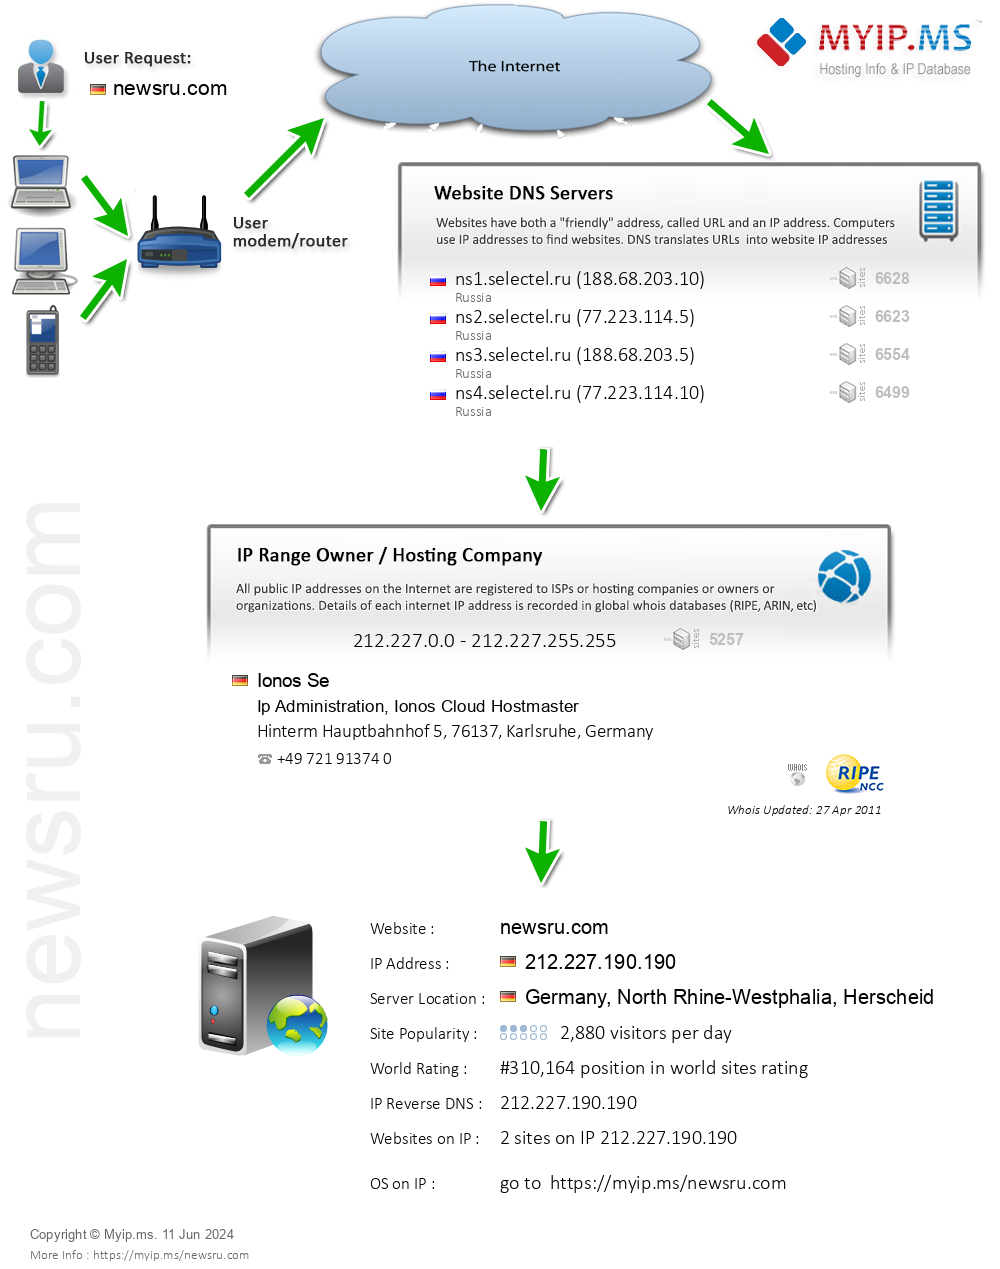 Newsru.com - Website Hosting Visual IP Diagram